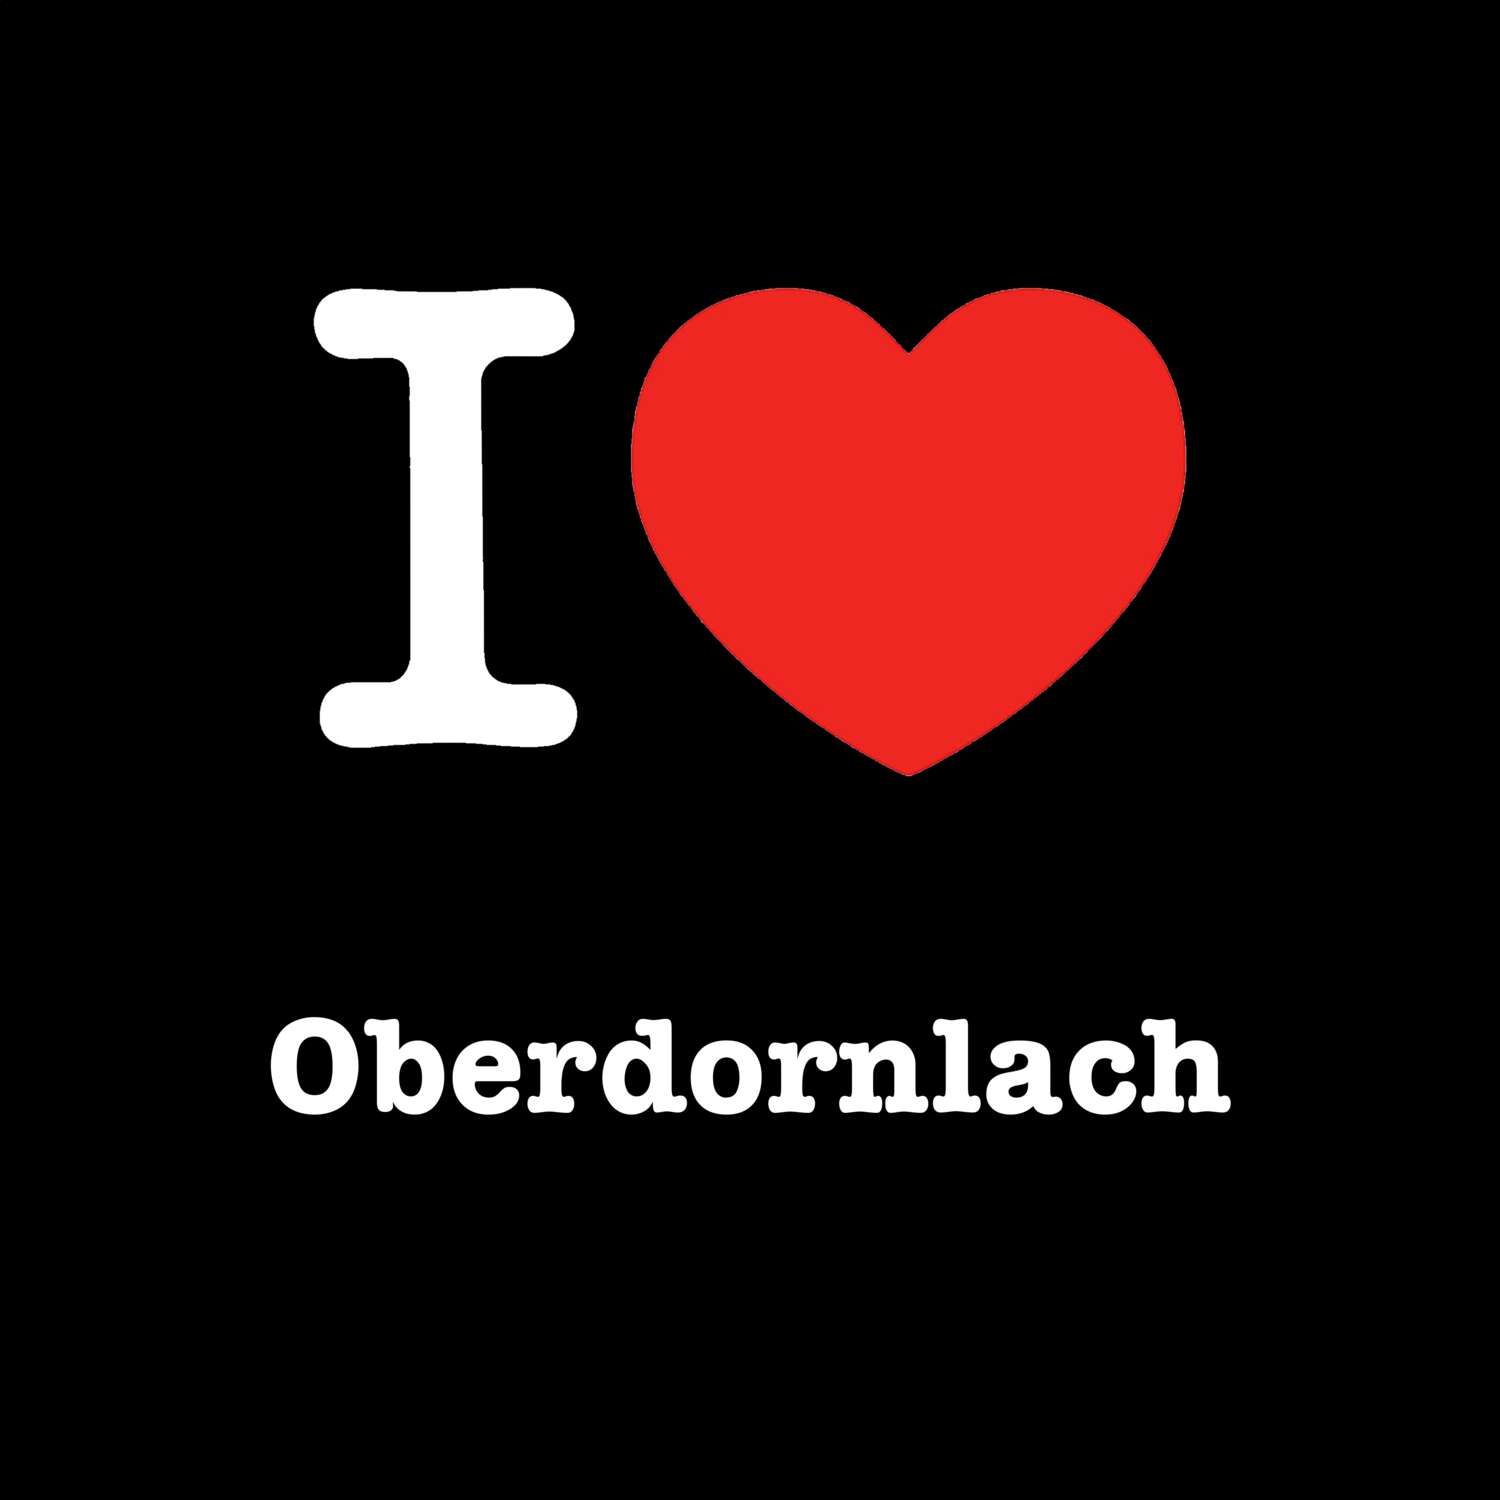 Oberdornlach T-Shirt »I love«